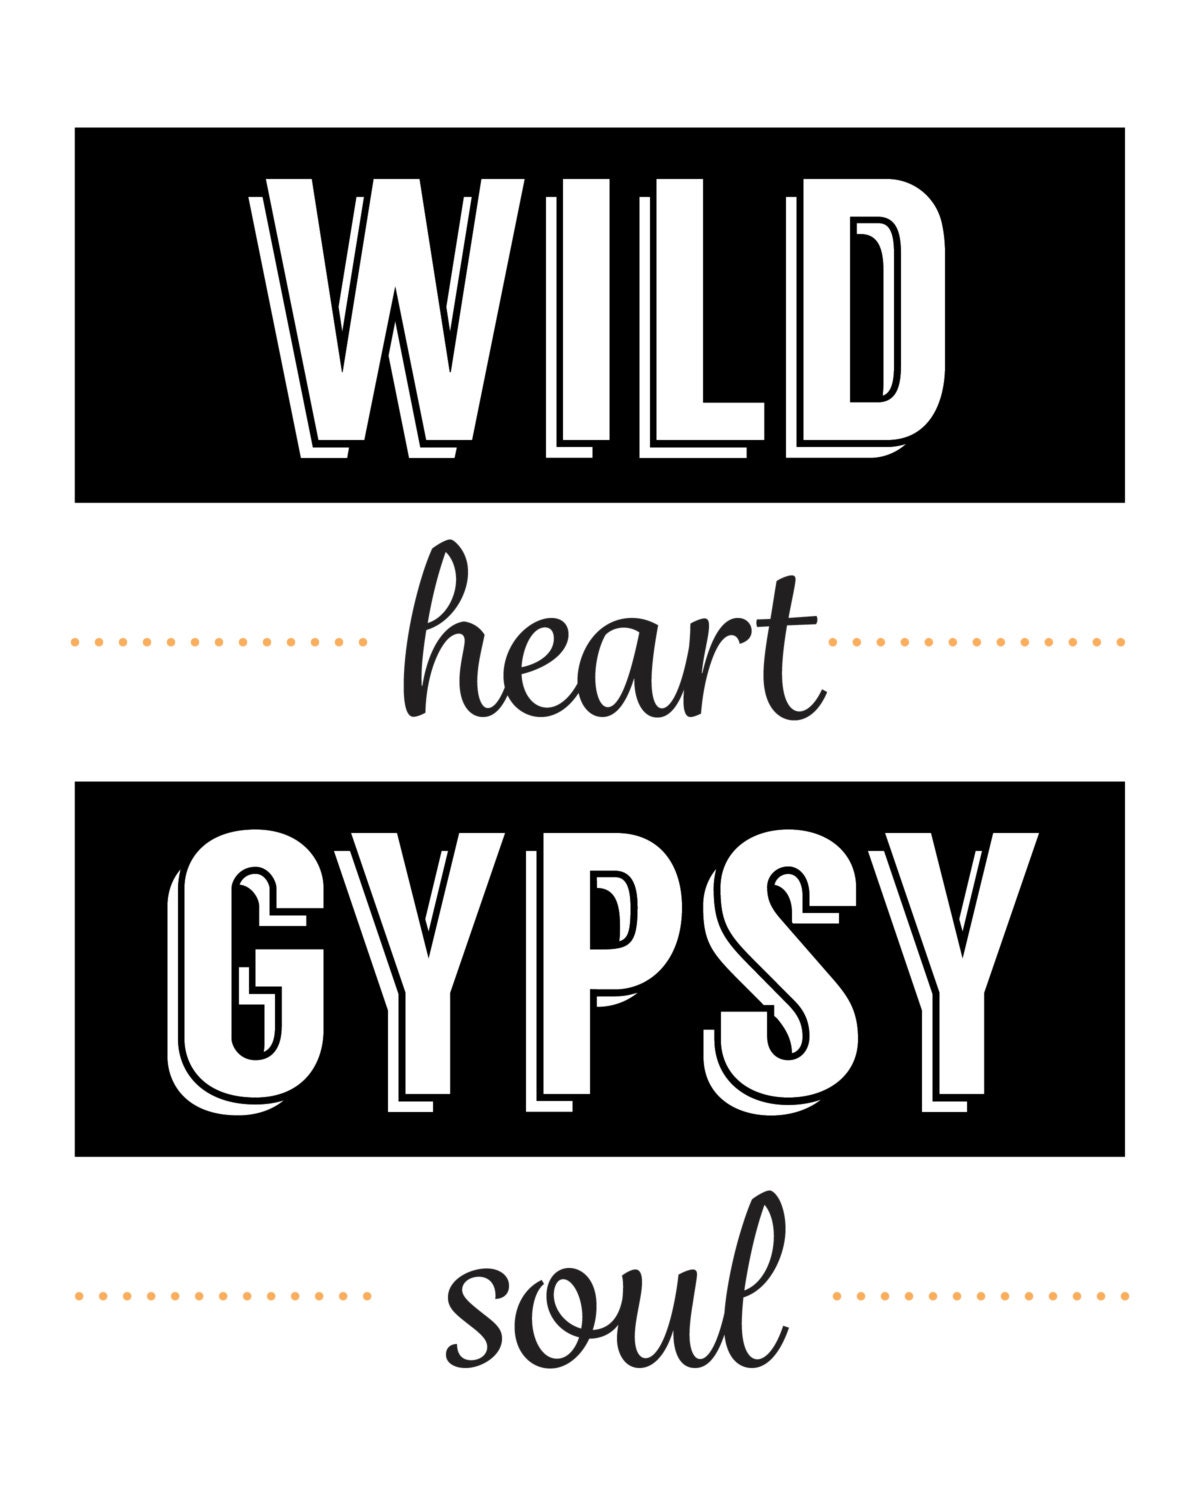 wild heart gypsy soul